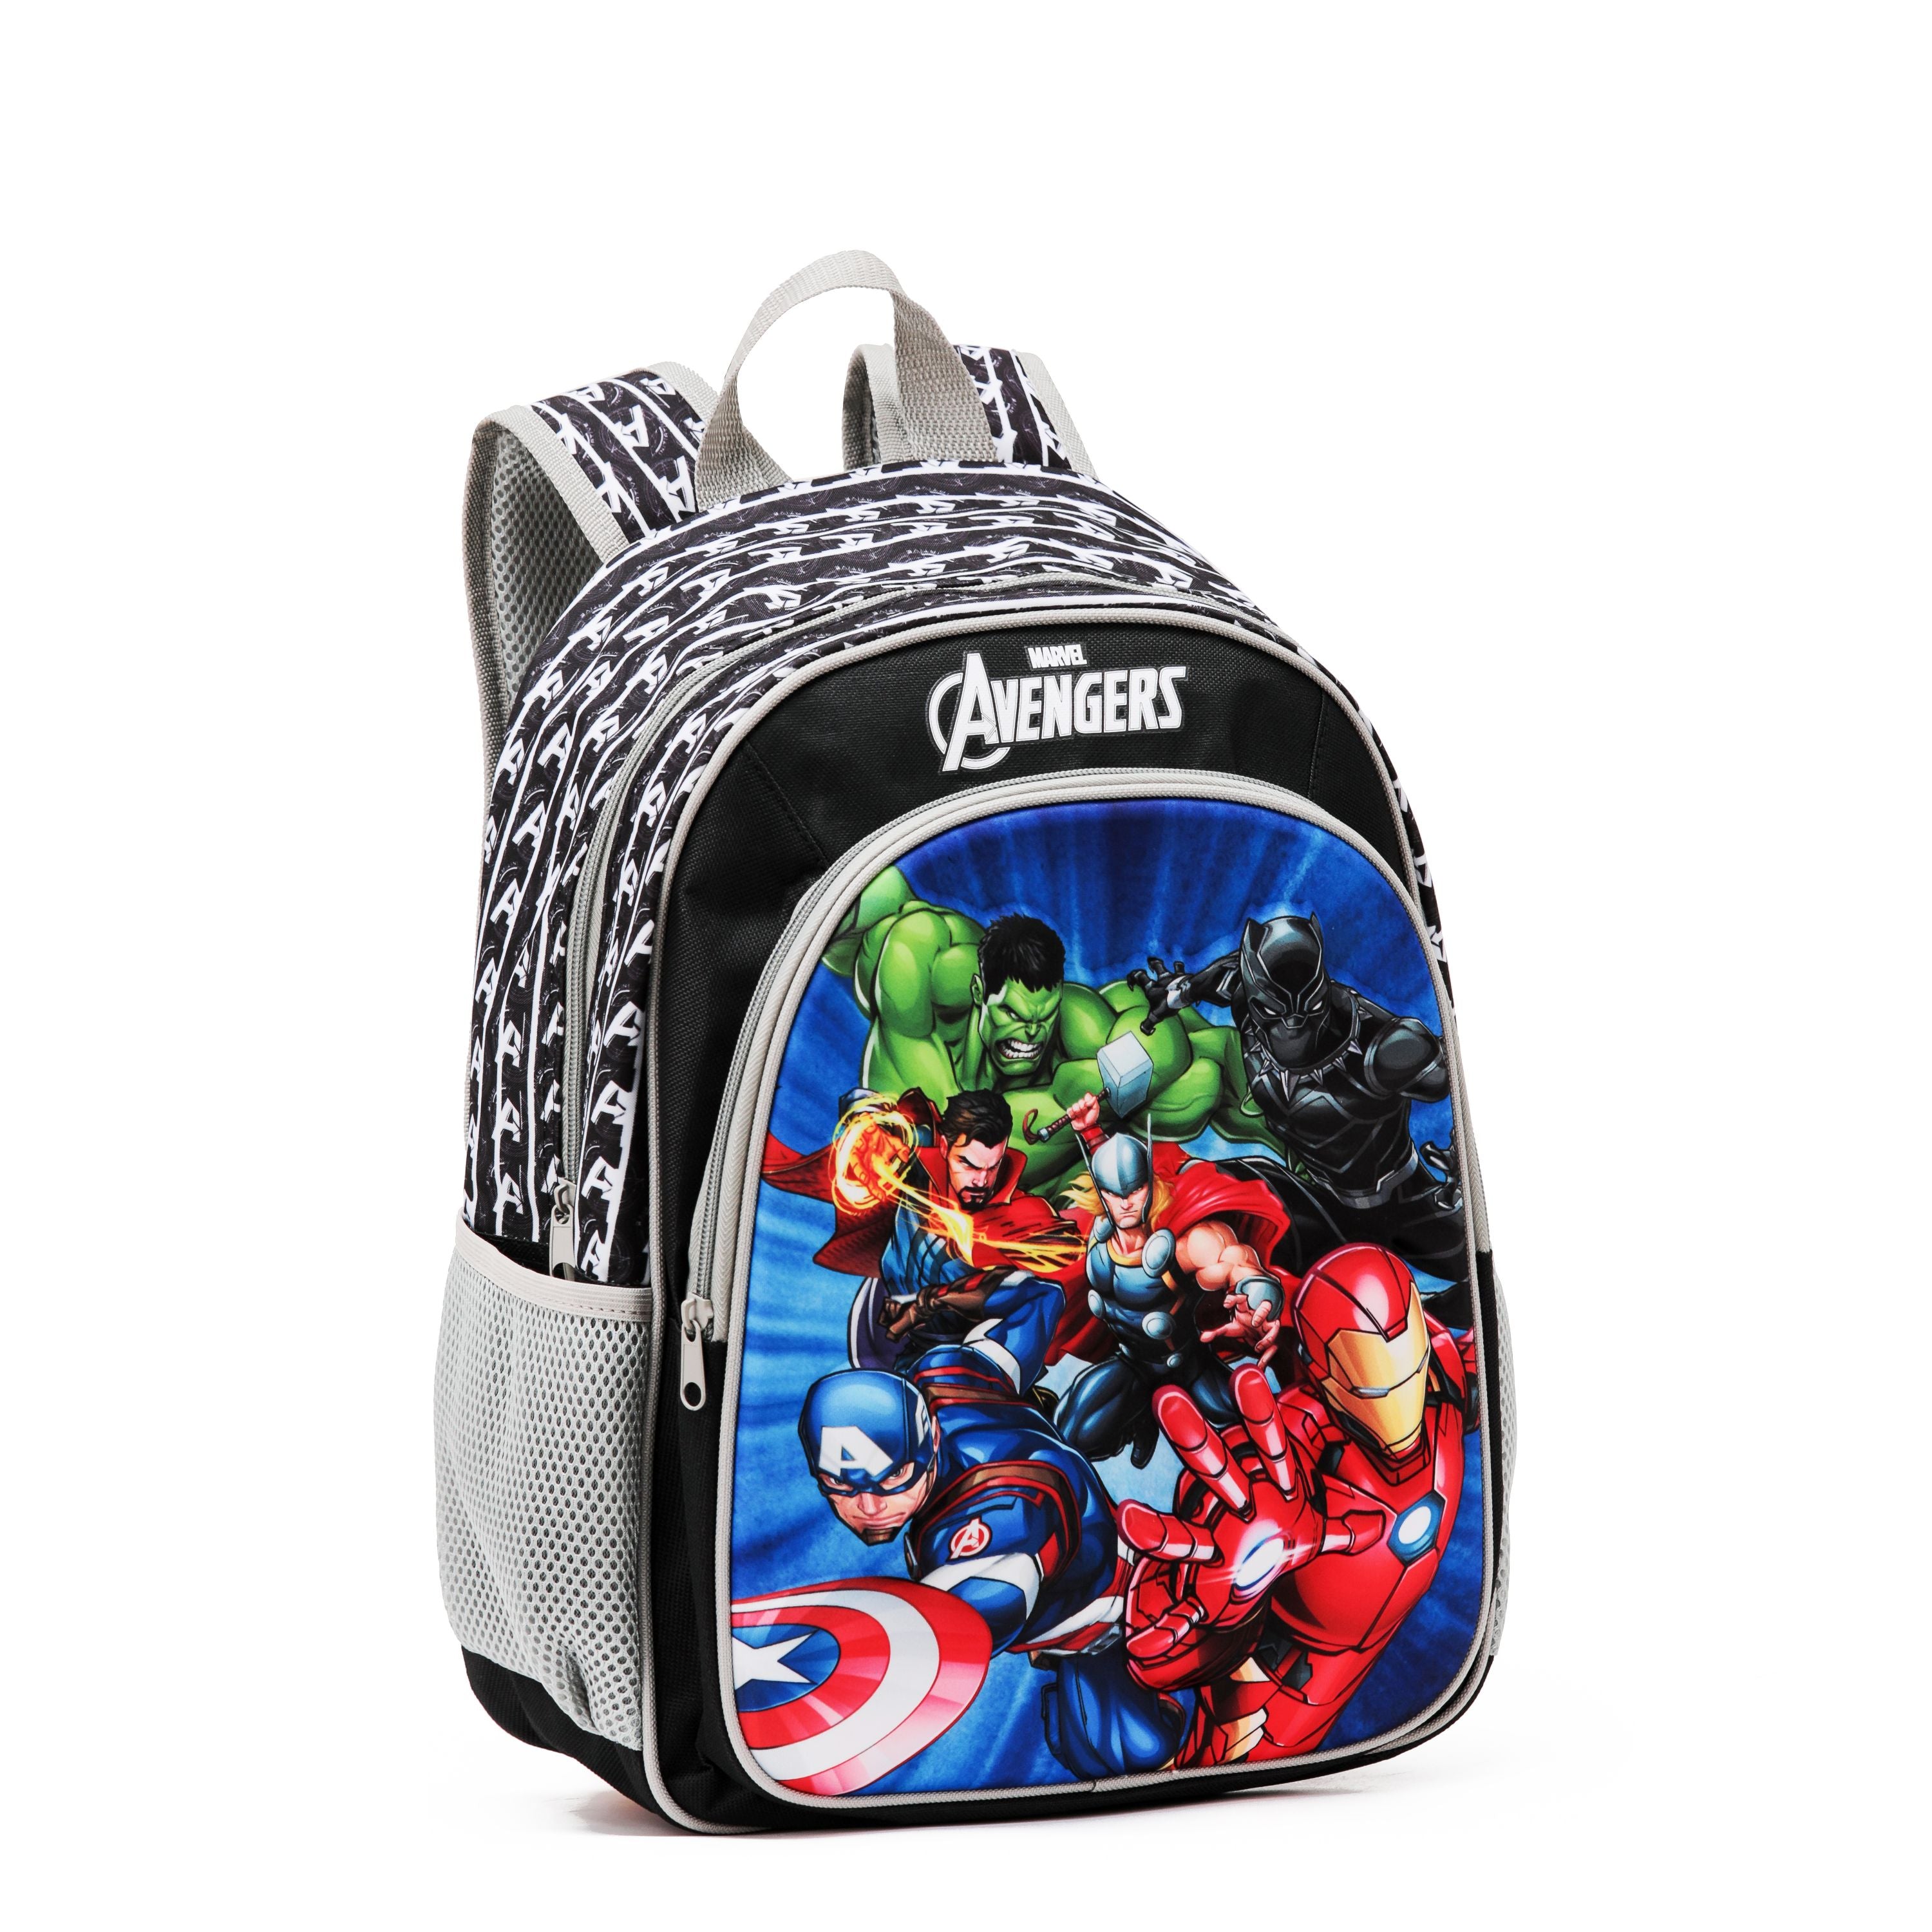 Marvel - Mar090 15in Avengers backpack - Black-1